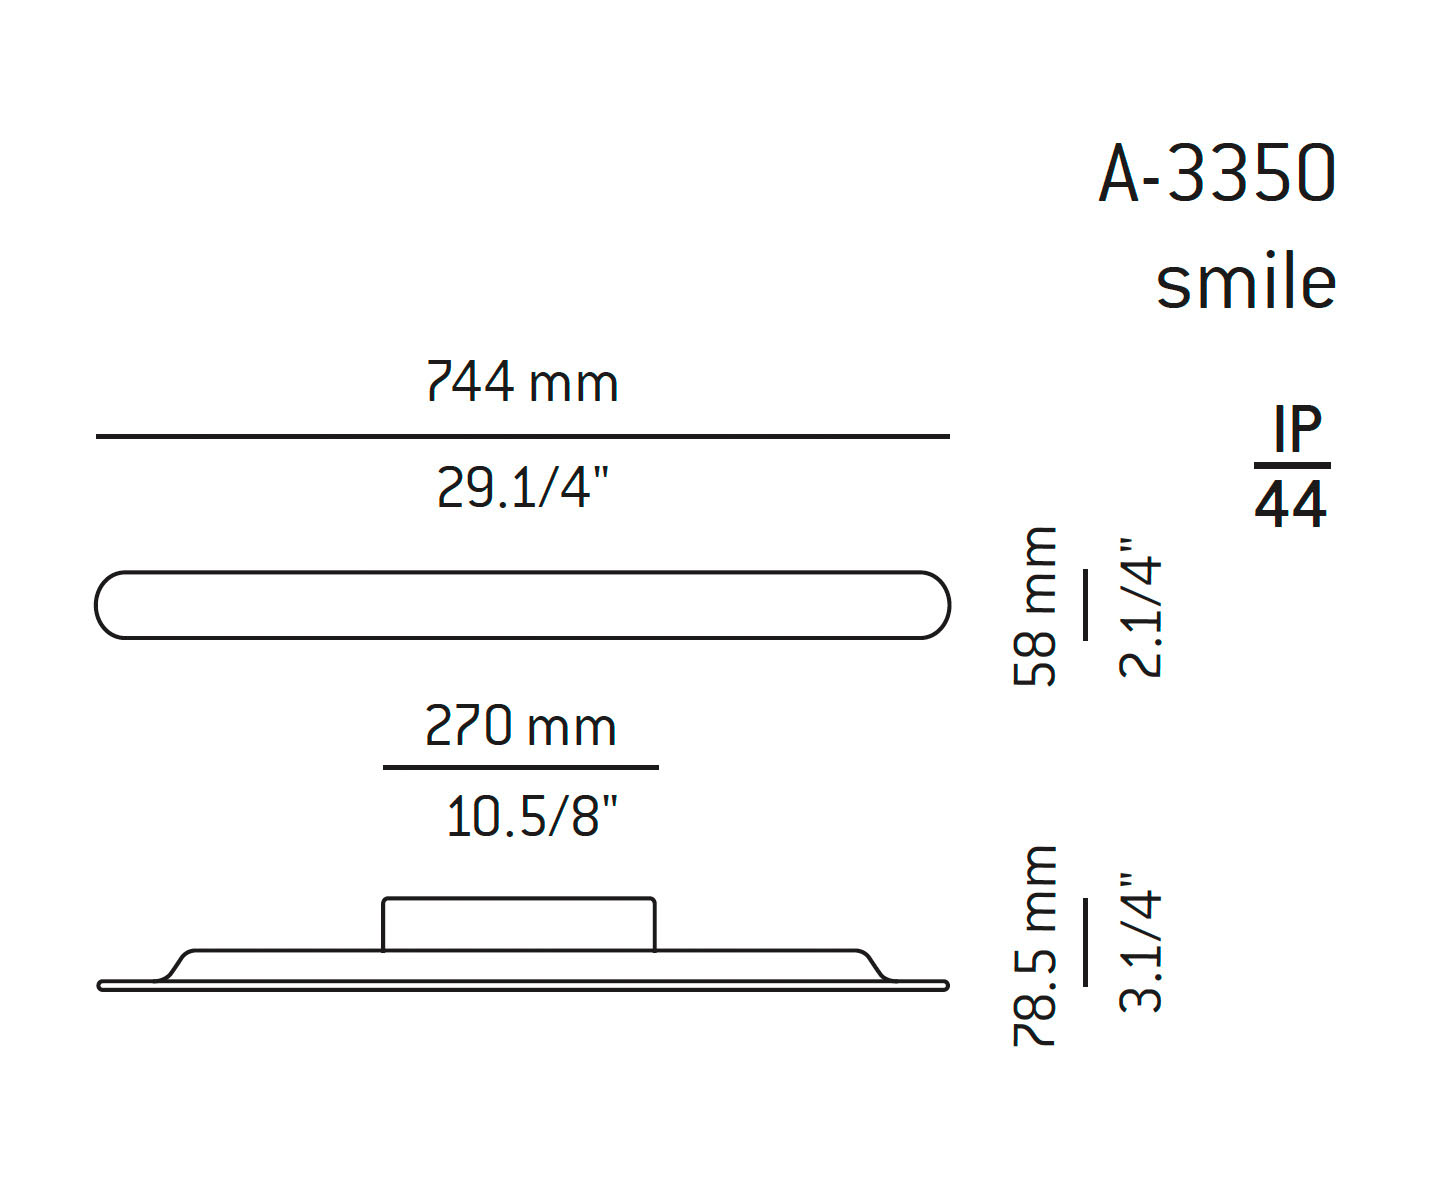 Medidas Smile modelo A-3350 de pared de Estiluz